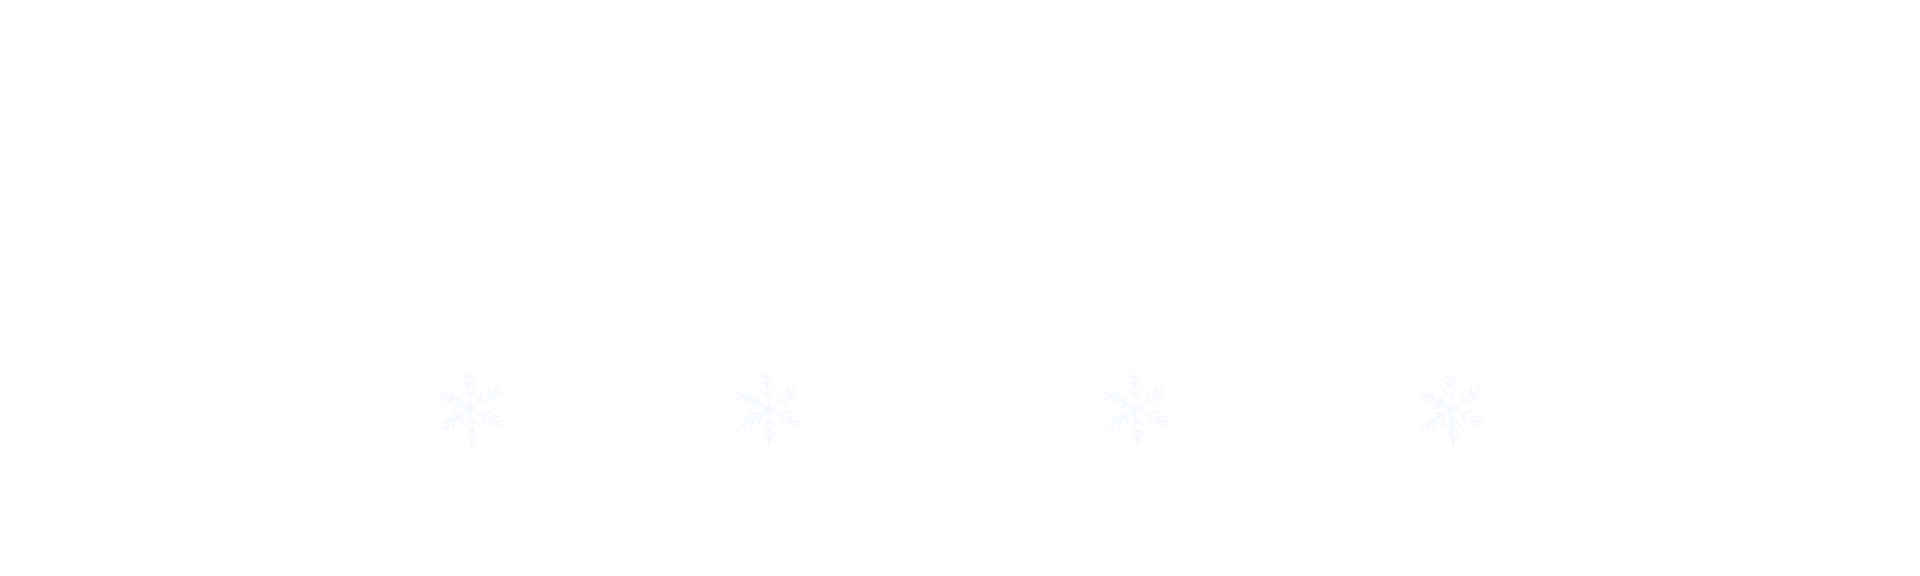 DANK Haus presents Weihnachtsmarkt Indoor Christmas Market Shopping, Santa, Hot Glühwein, German Food